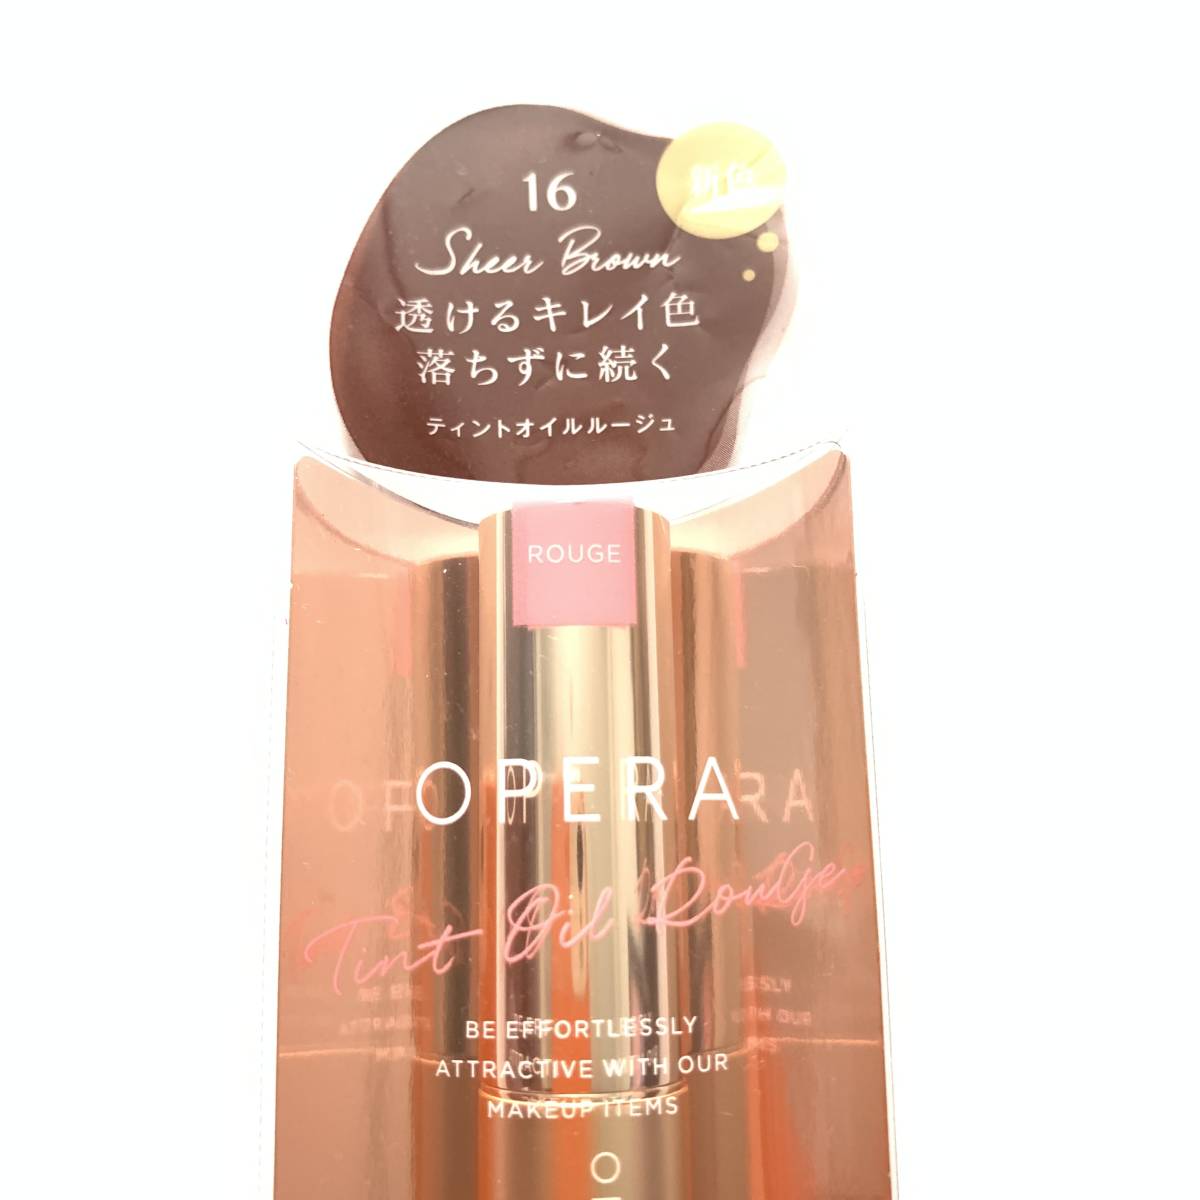  new goods *OPERA ( opera ) lip tintoN 16sia- Brown ( lip color )*